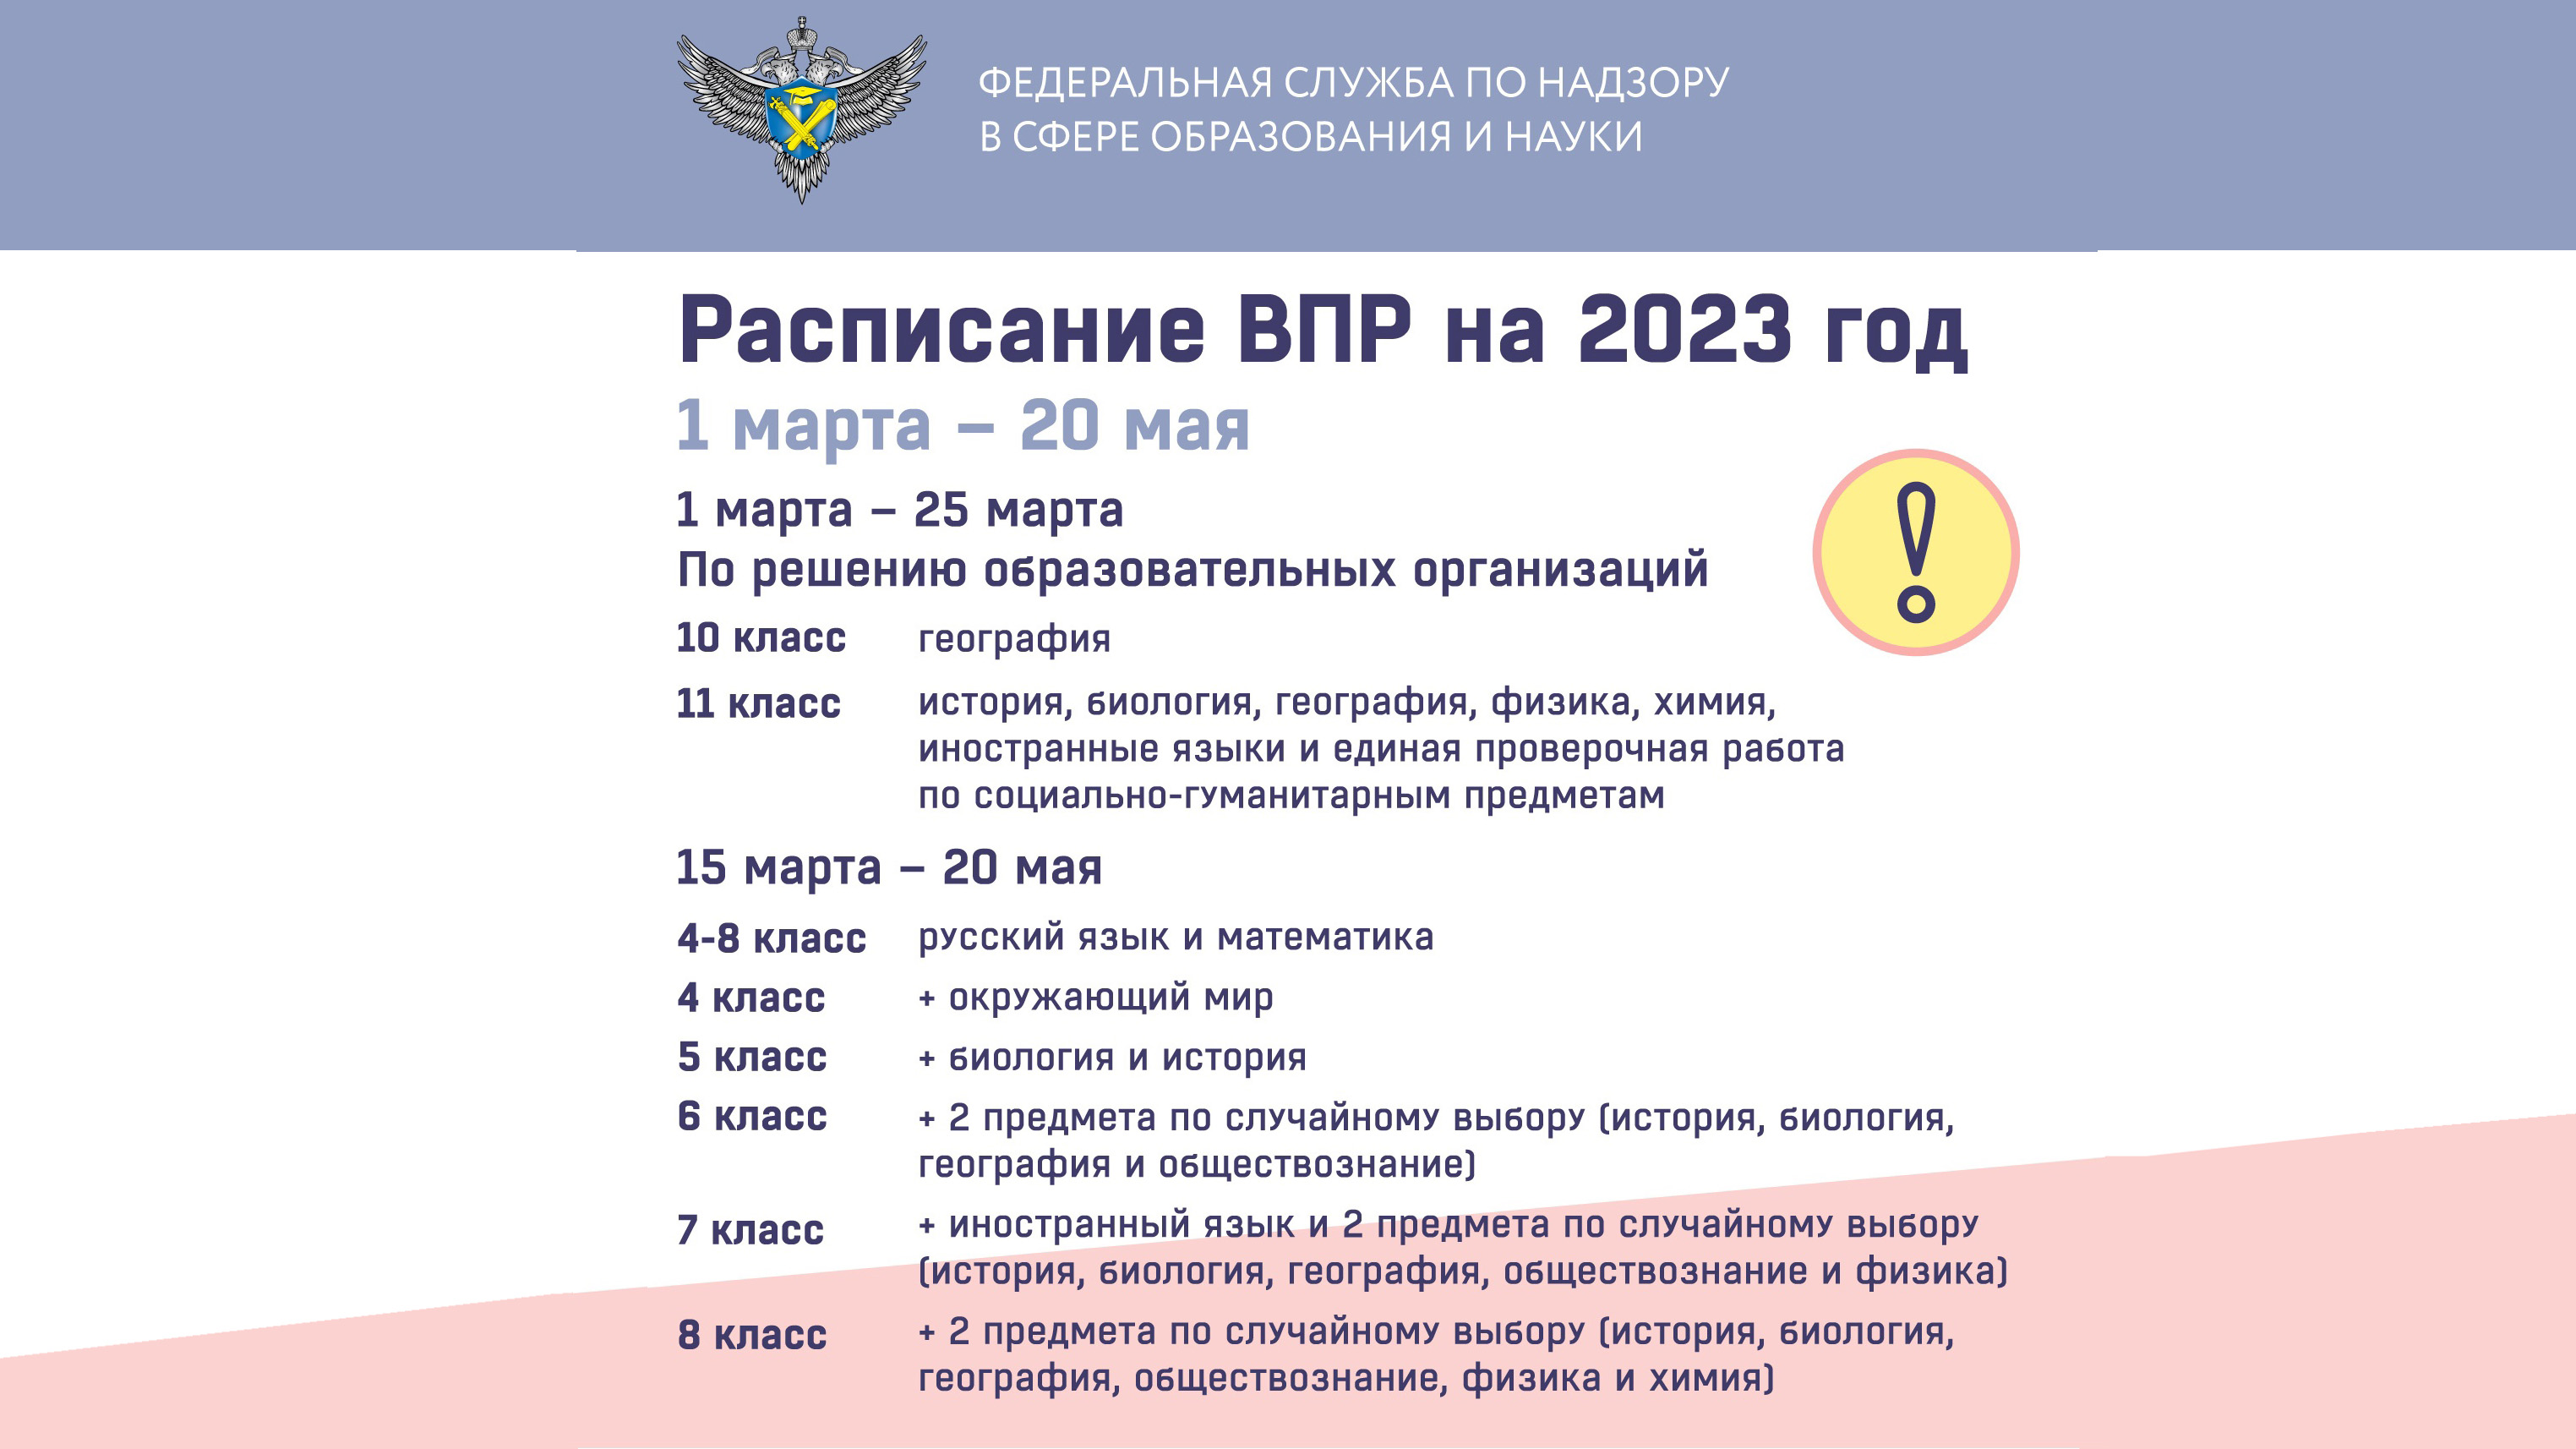 Начало впр в 2024 году. ВПР 2023 расписание. Всероссийские проверочные работы в 2023 году. График ВПР В 2023 году. Расписание ВПР.